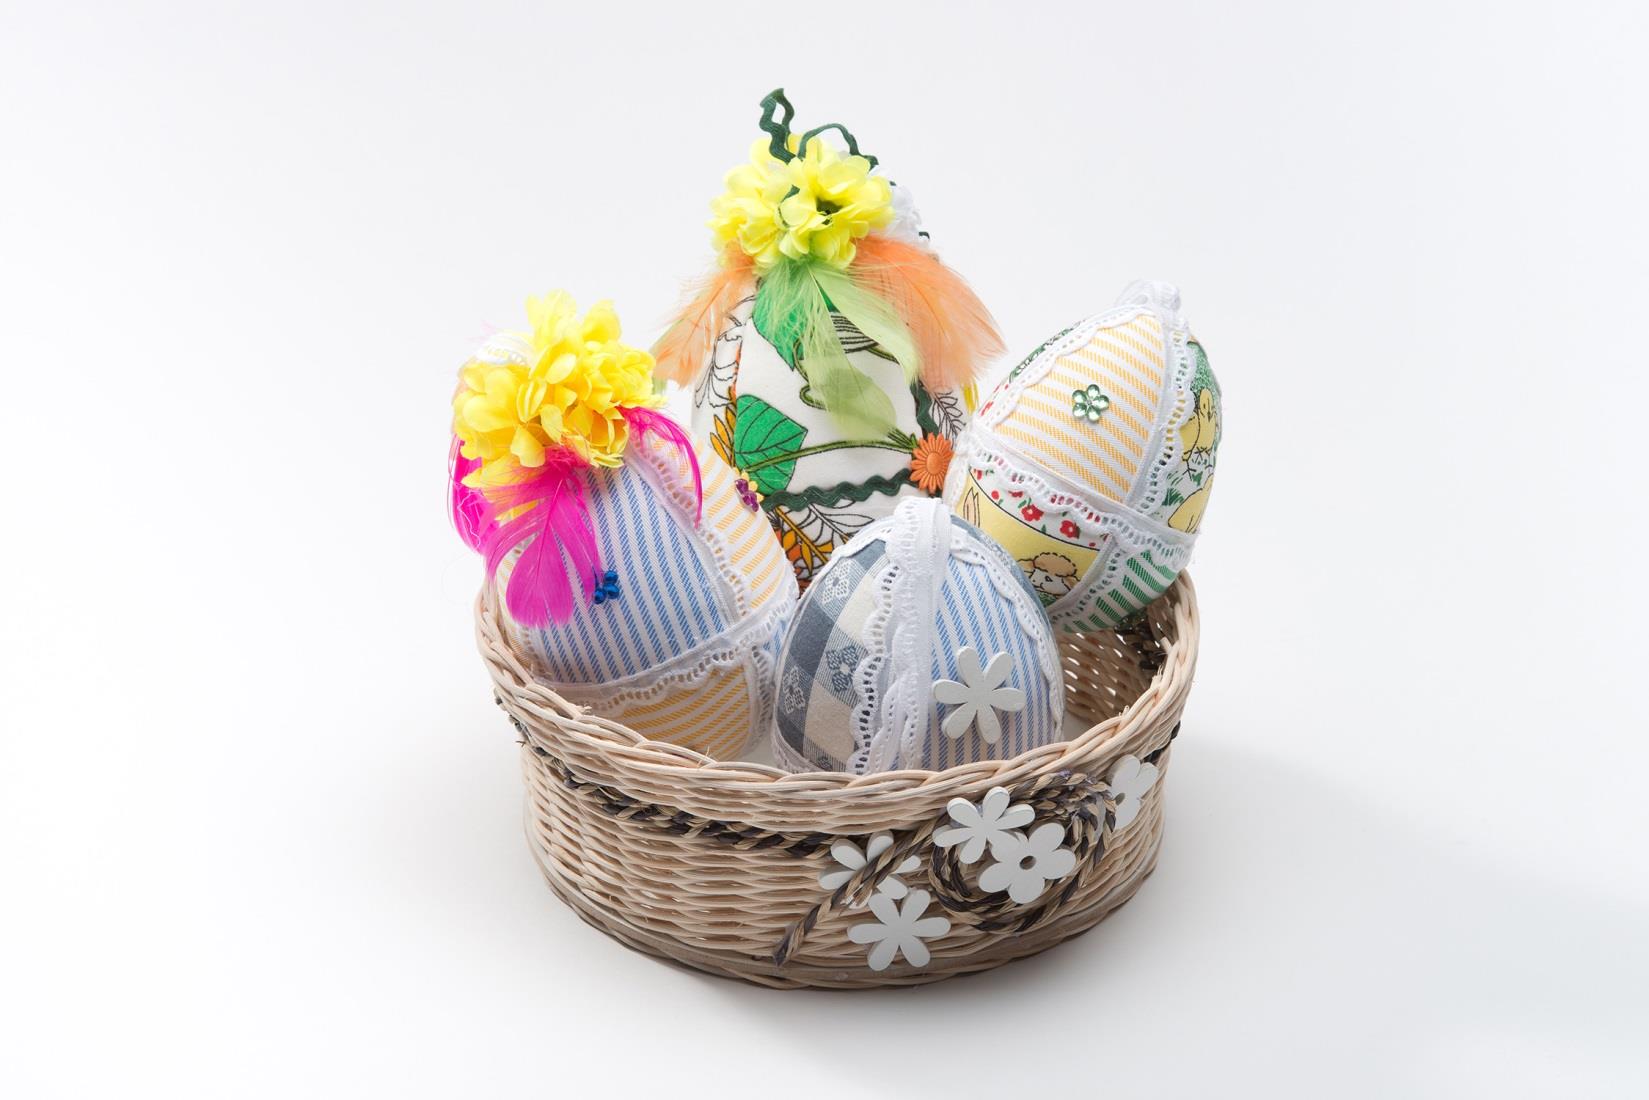 Velikonoční vajíčka (patchwork) Materiál: polystyrenové vejce, textil, dekorační materiál Rozměry: výška od 8 cm do 15 cm